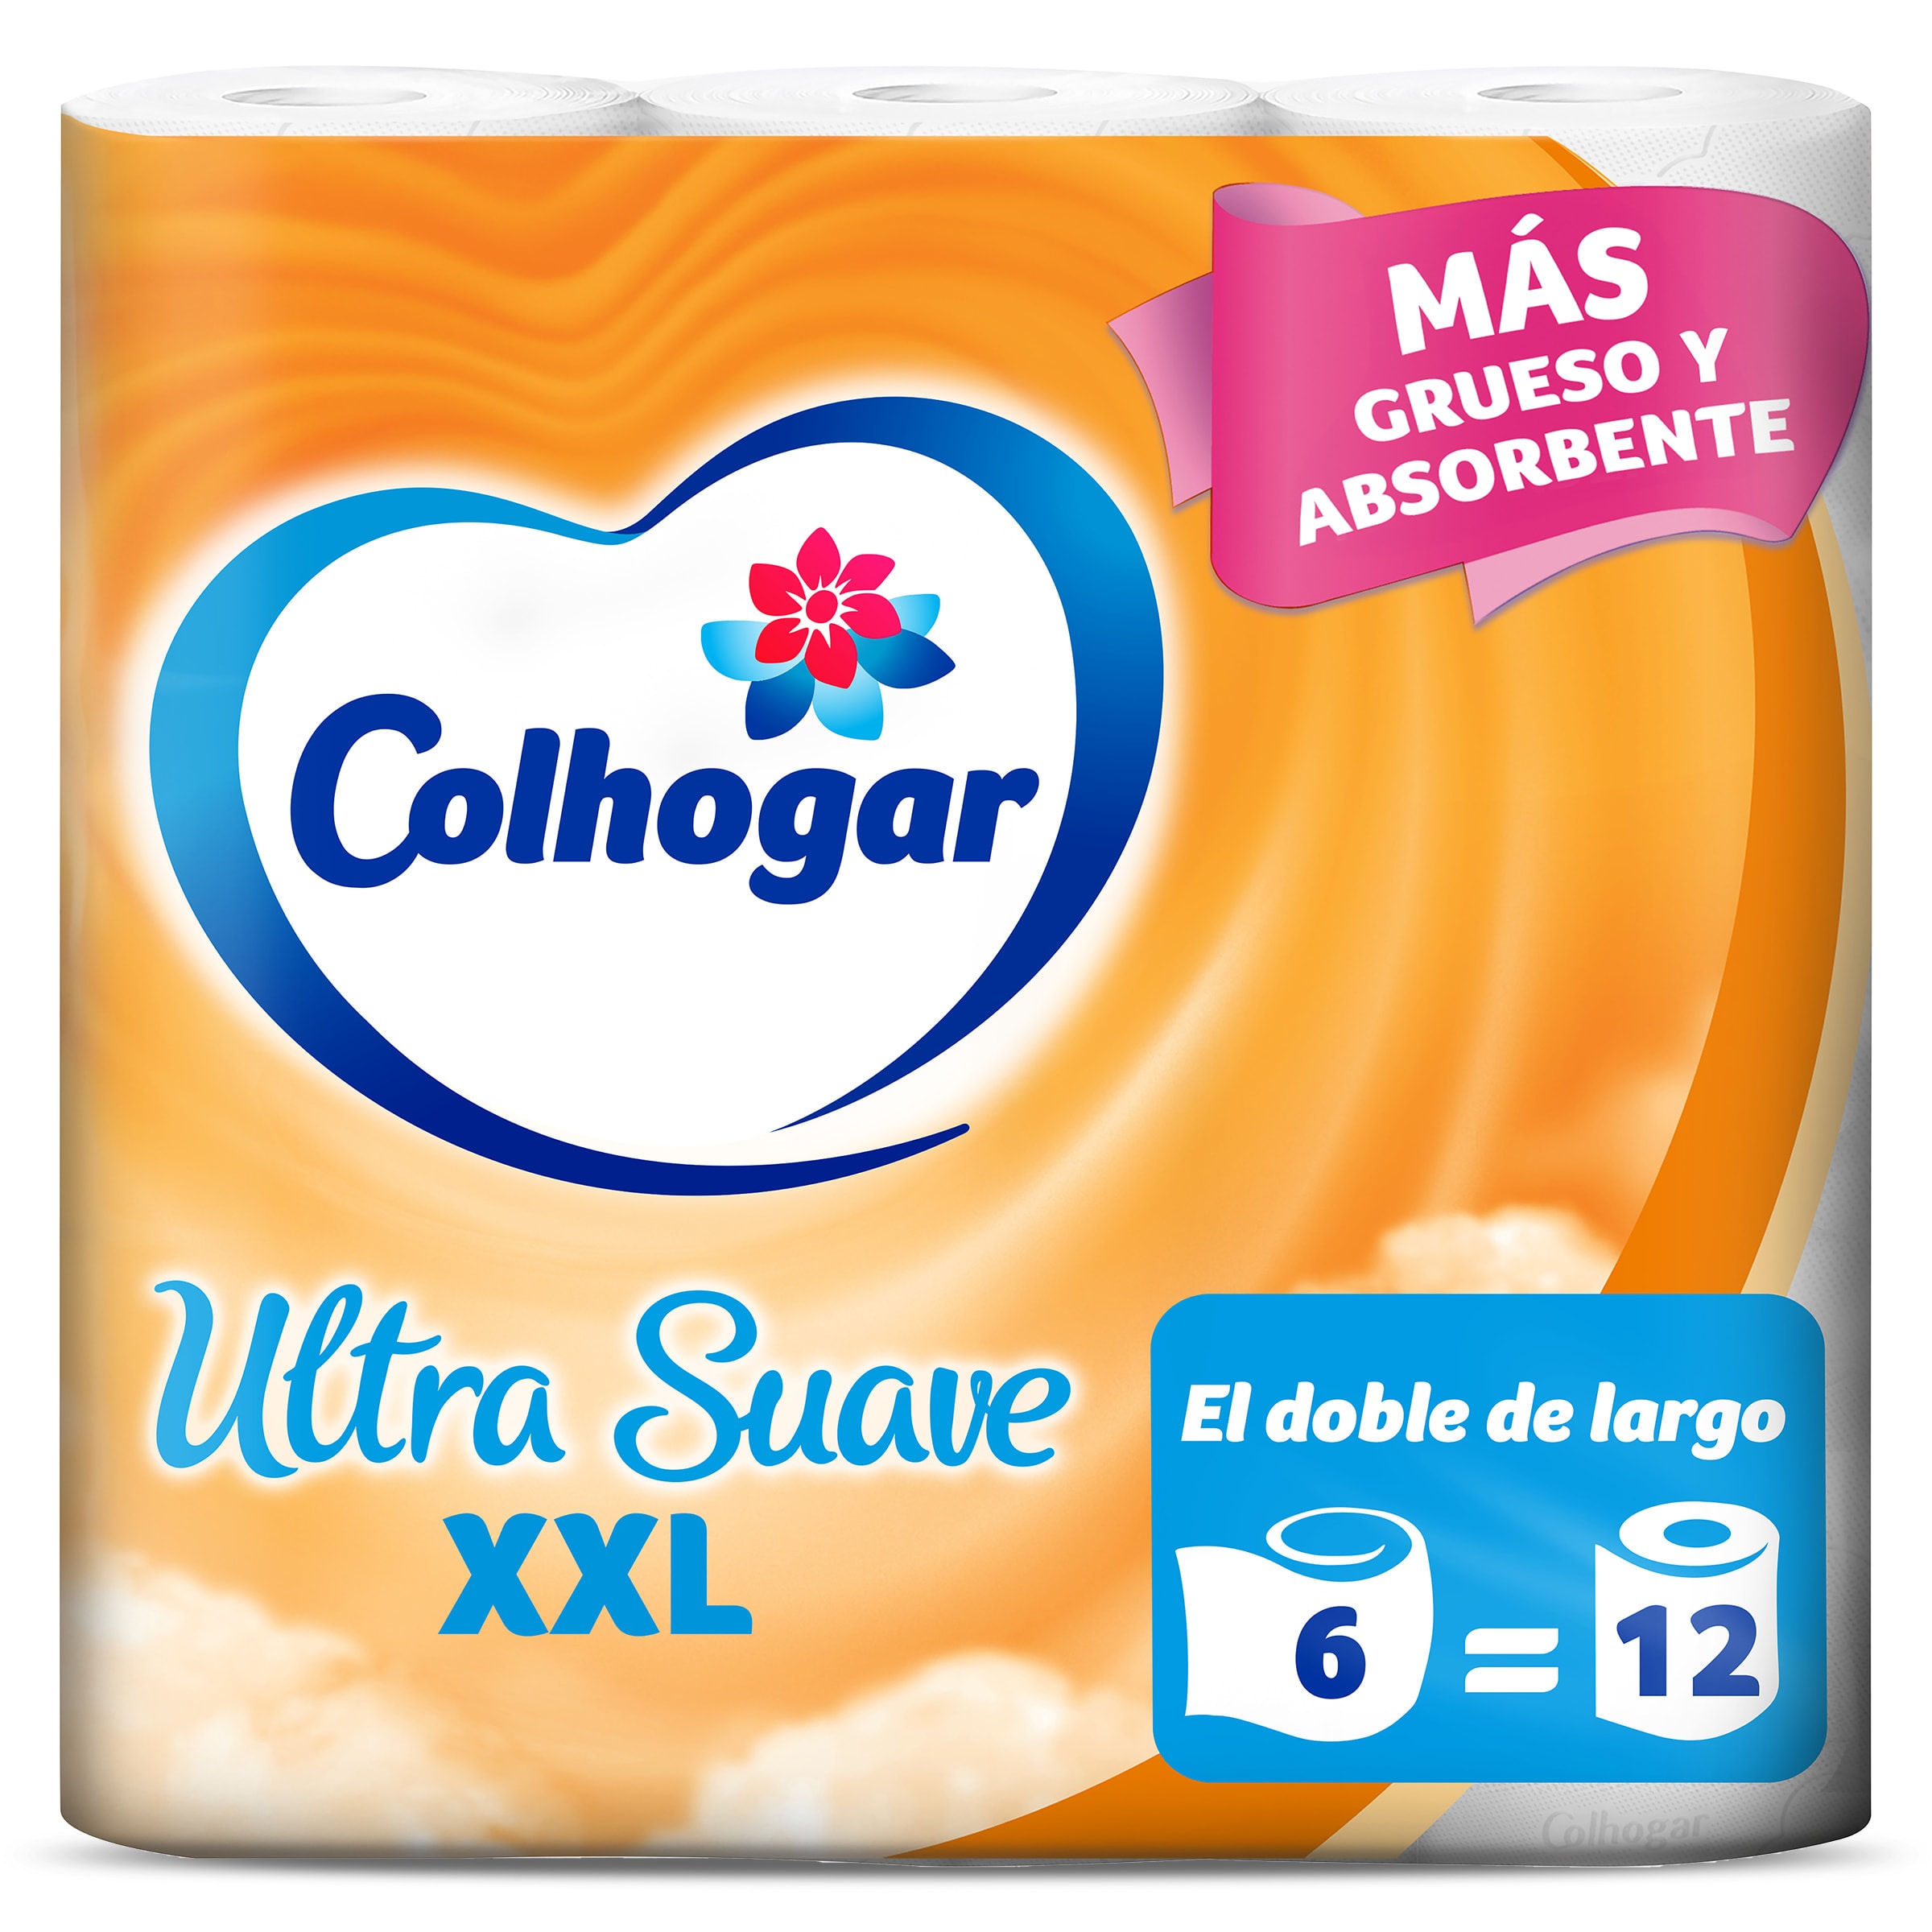 Papel higiénico xxl Colhogar bolsa 6 unidades - Supermercados DIA